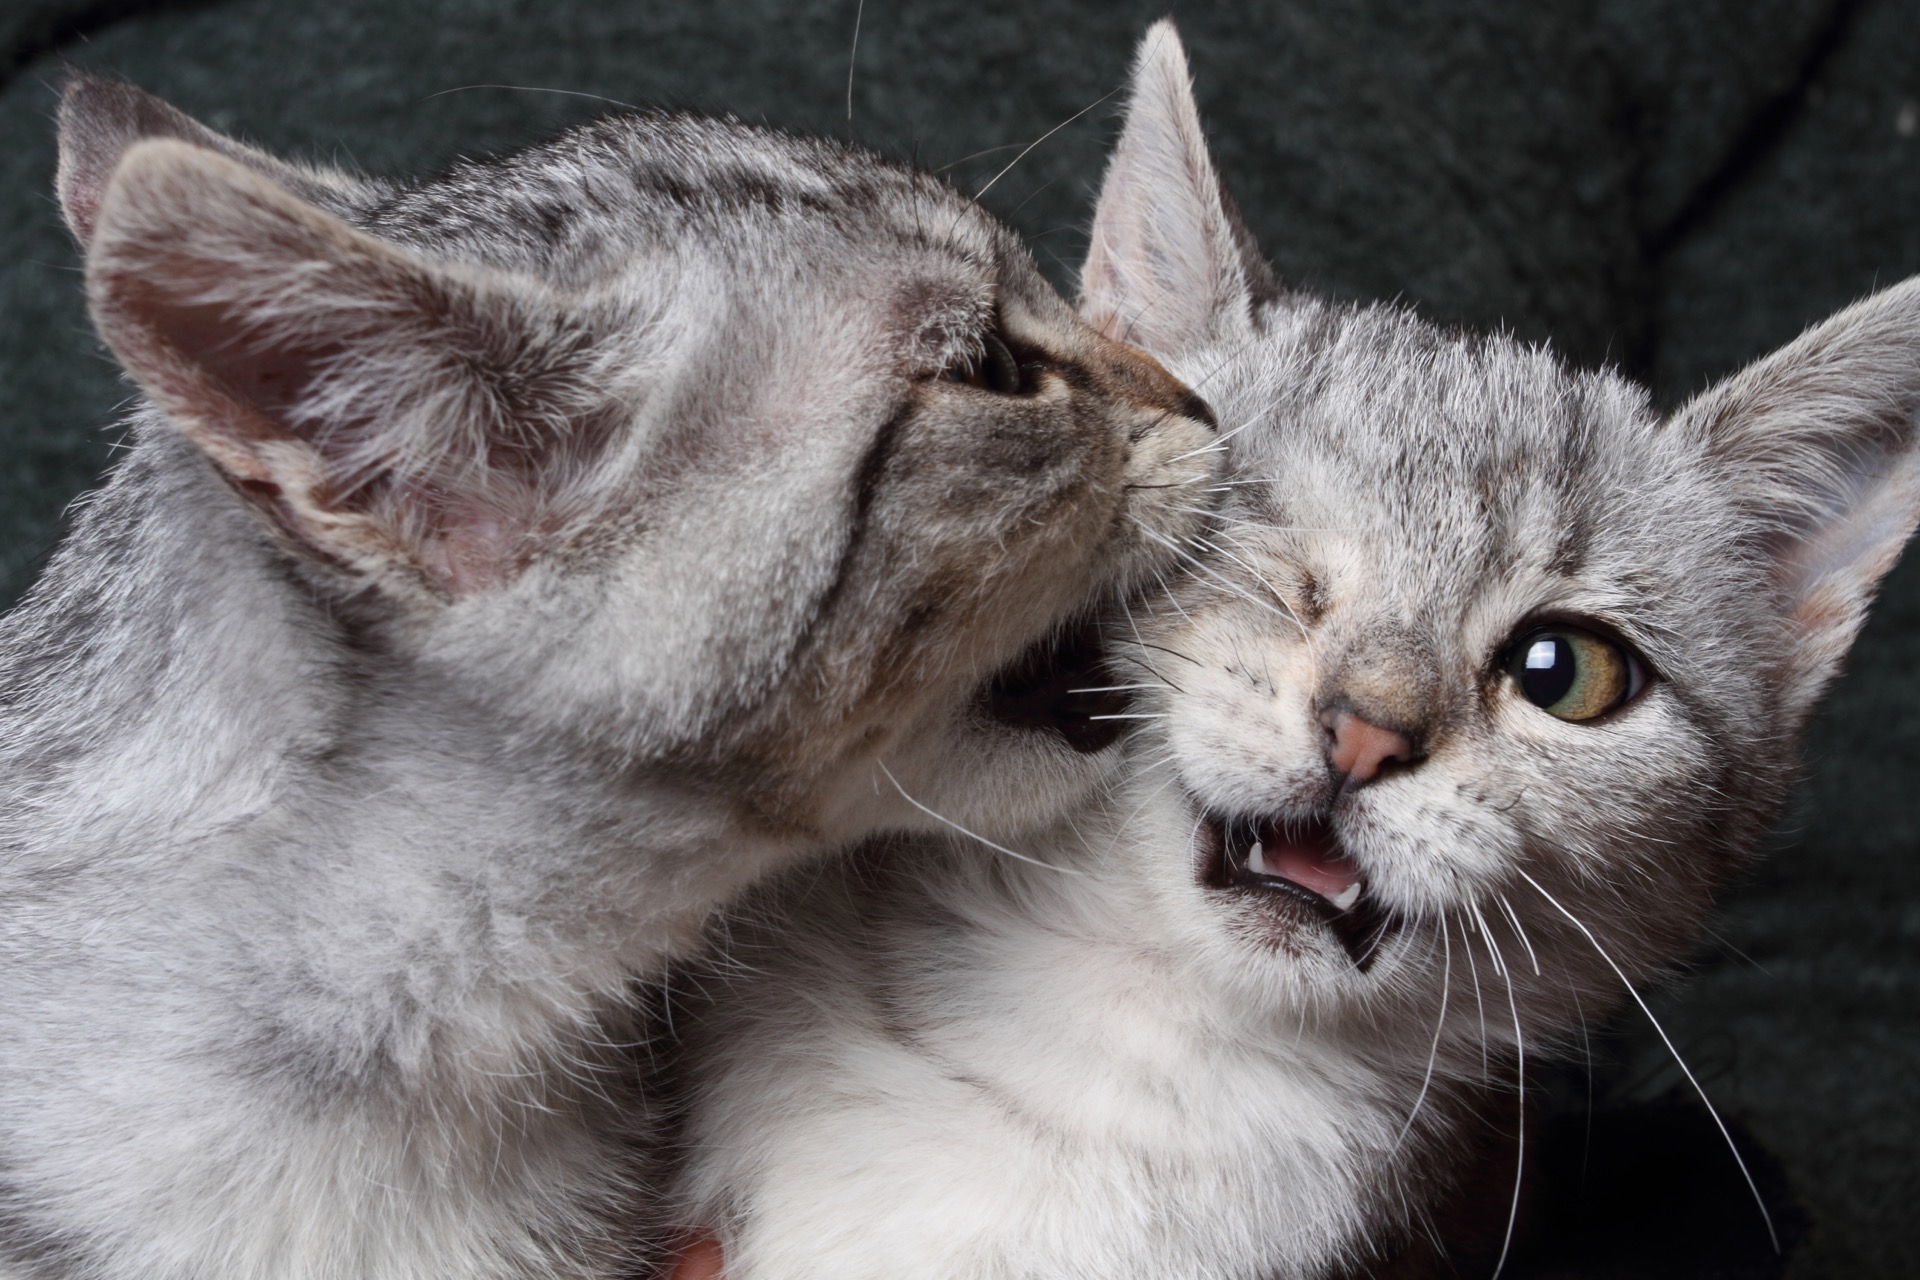 Vous ne savez pas si votre chat veut jouer ou se battre ? Cette étude vous aidera peut-être. © Antonio Nardelli, Adobe Stock